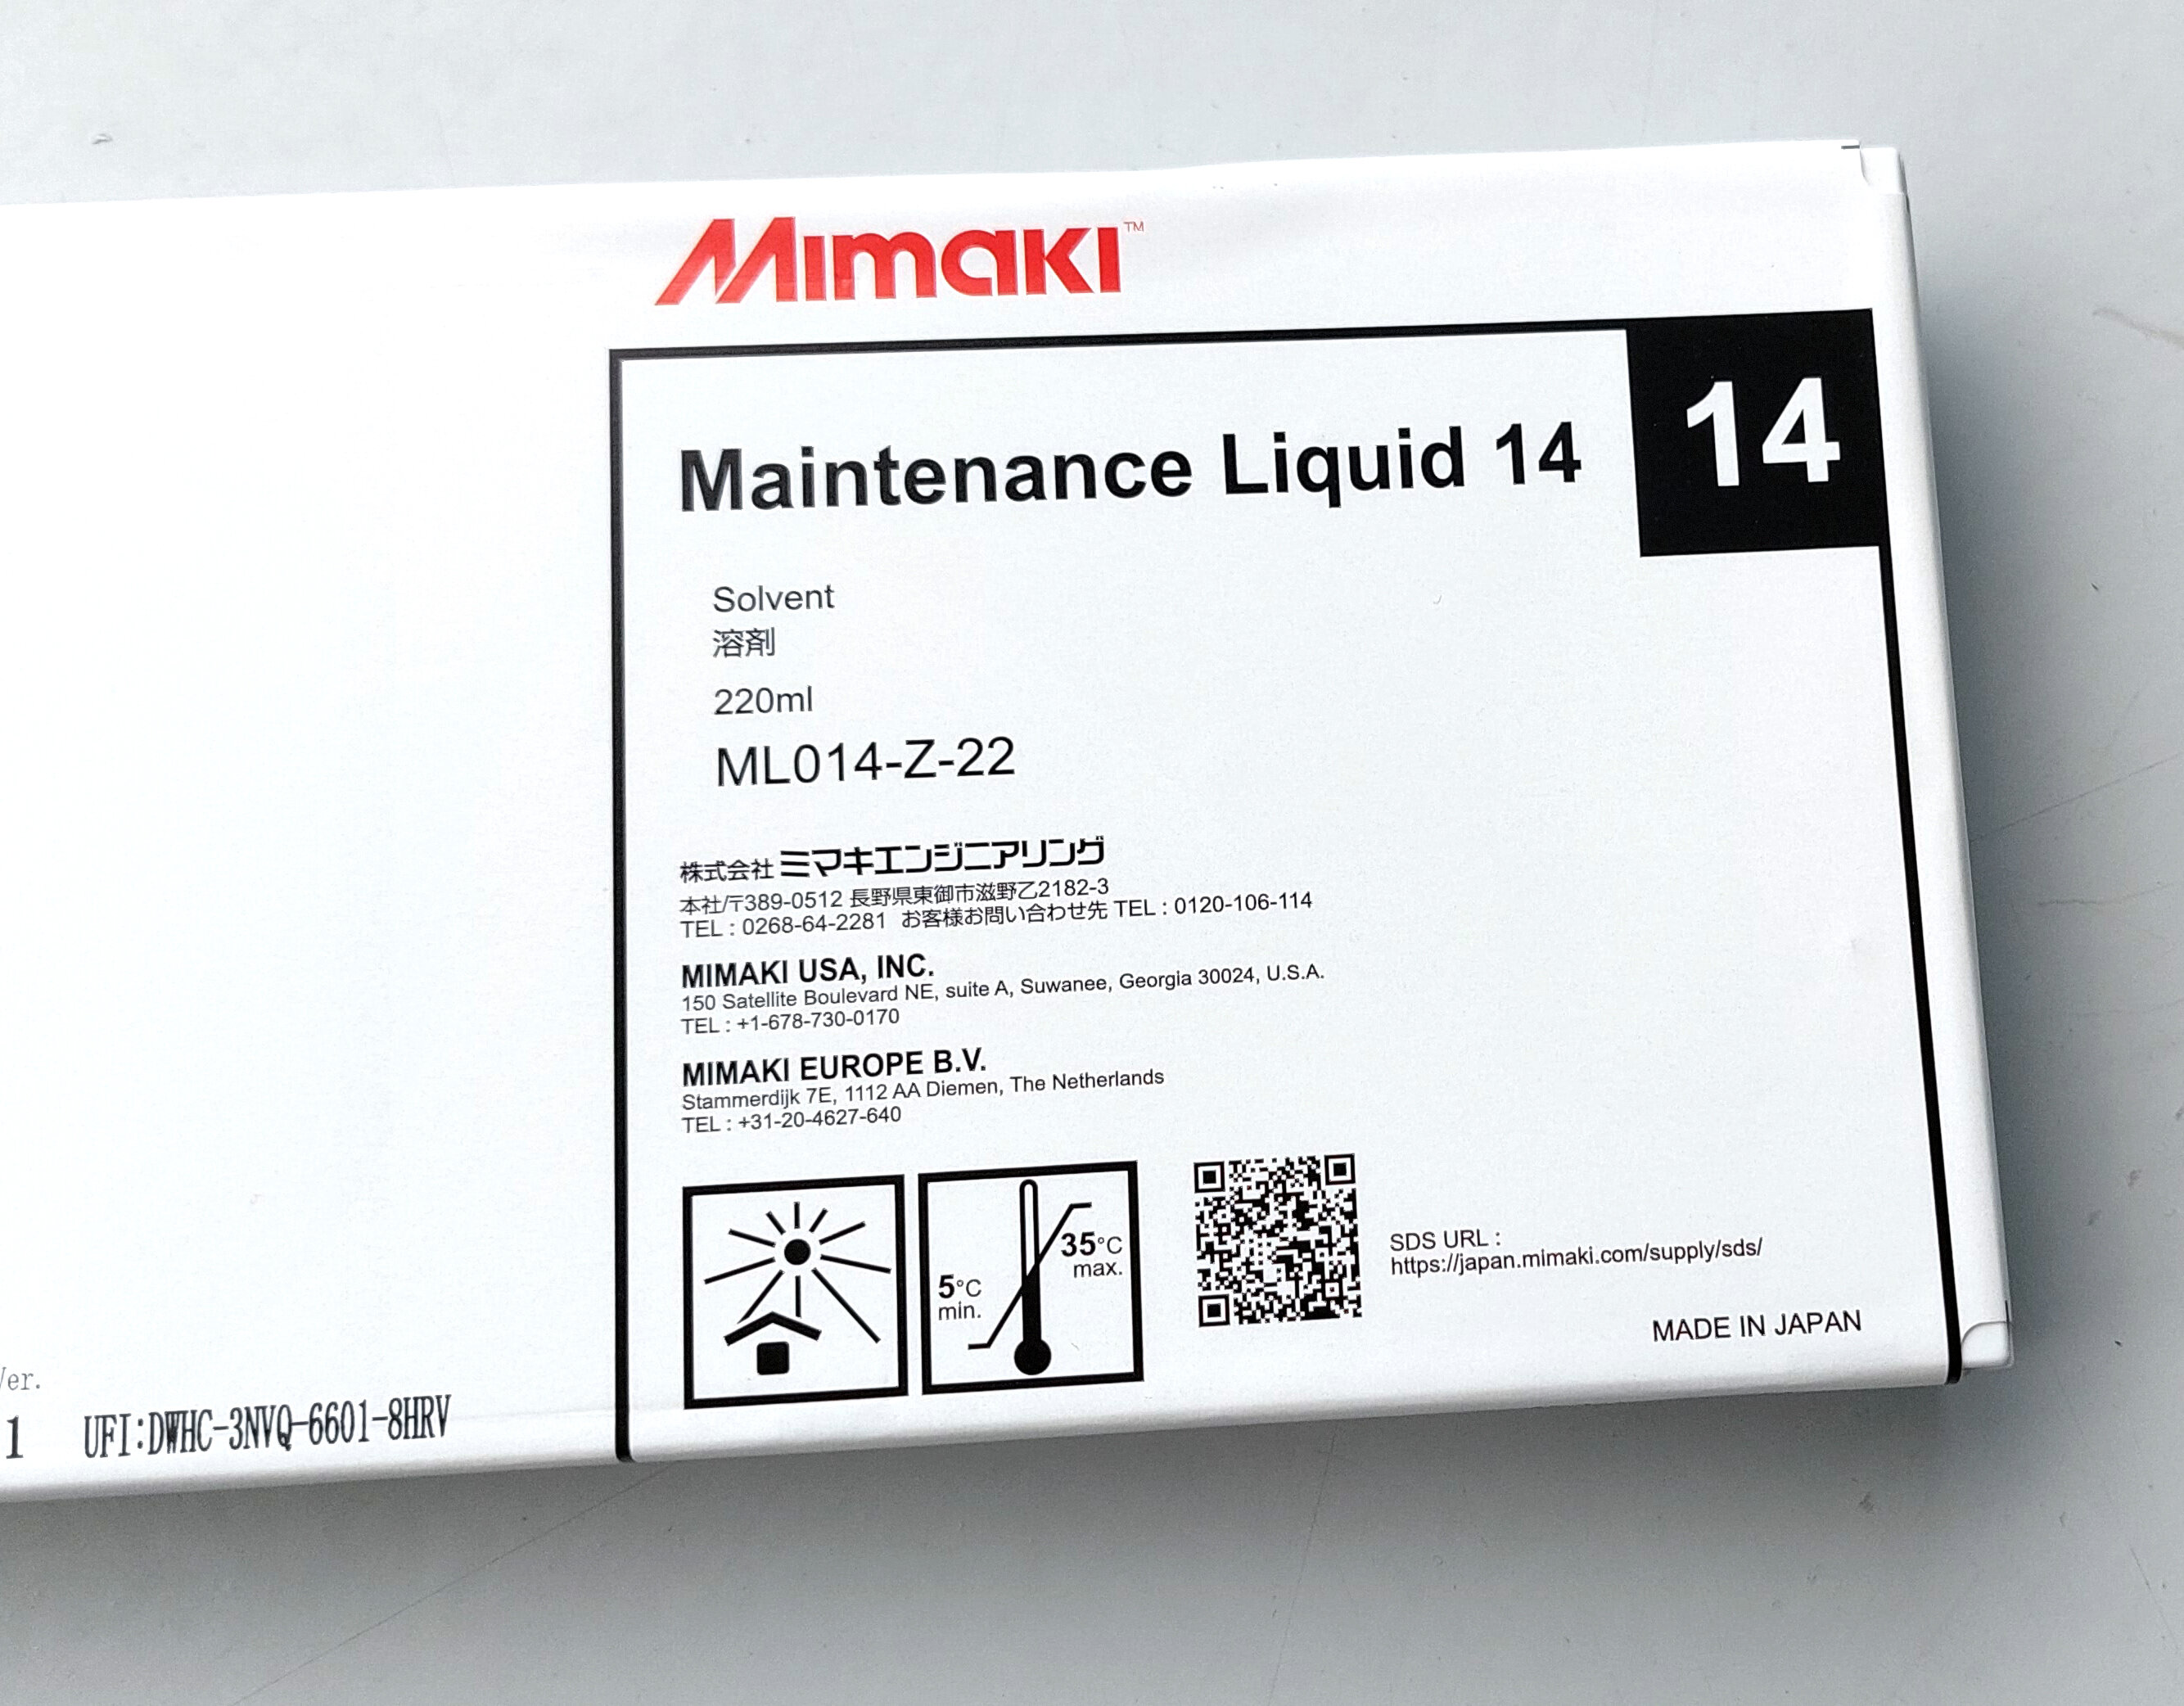 Cleaning pour imprimantes Mimaki avec encre à solvant (maintenance liquid 14)